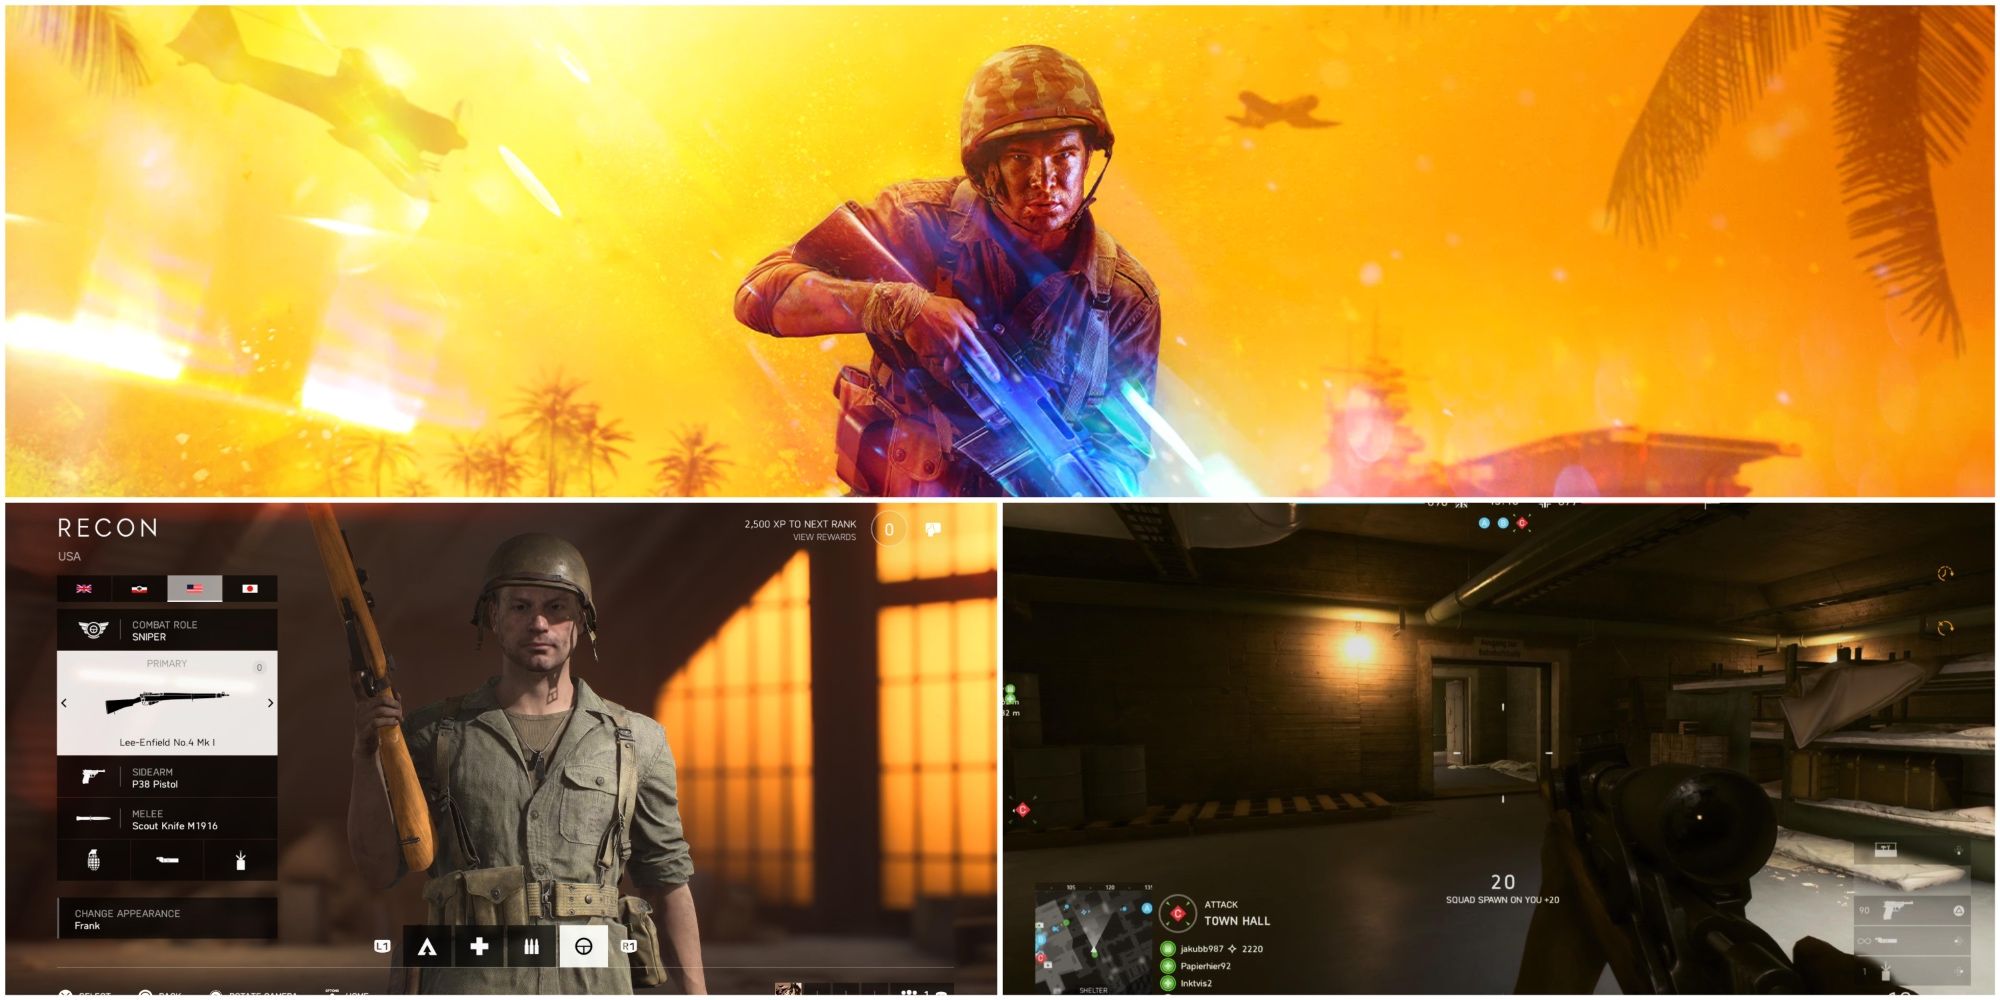 Imagem dividida mostrando um soldado carregando um atirador no Battlefield 5.